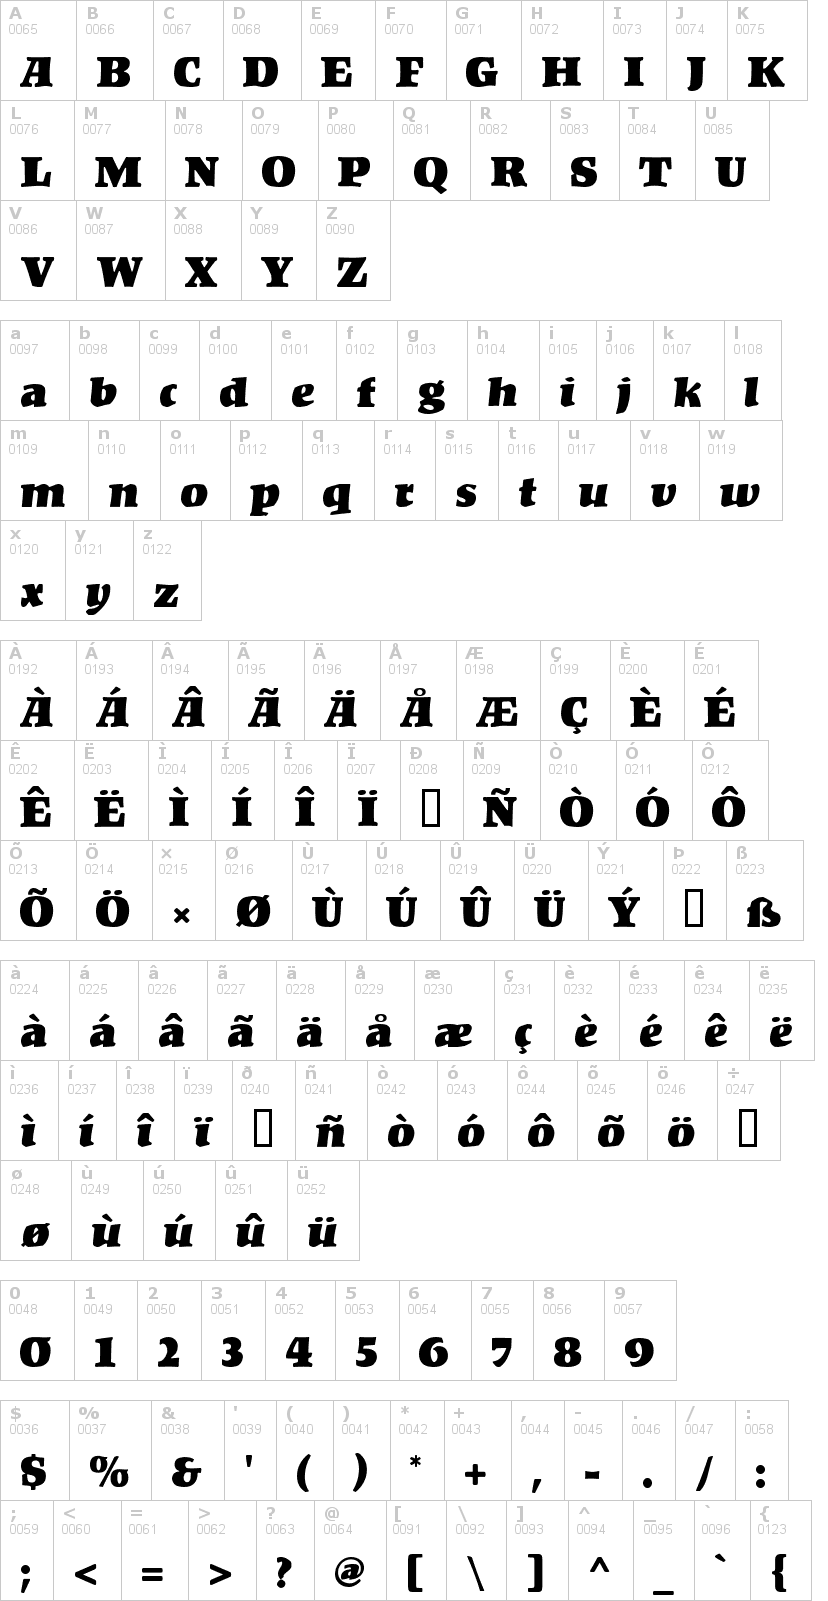 Lettere dell'alfabeto del font kompakt con le quali è possibile realizzare adesivi prespaziati